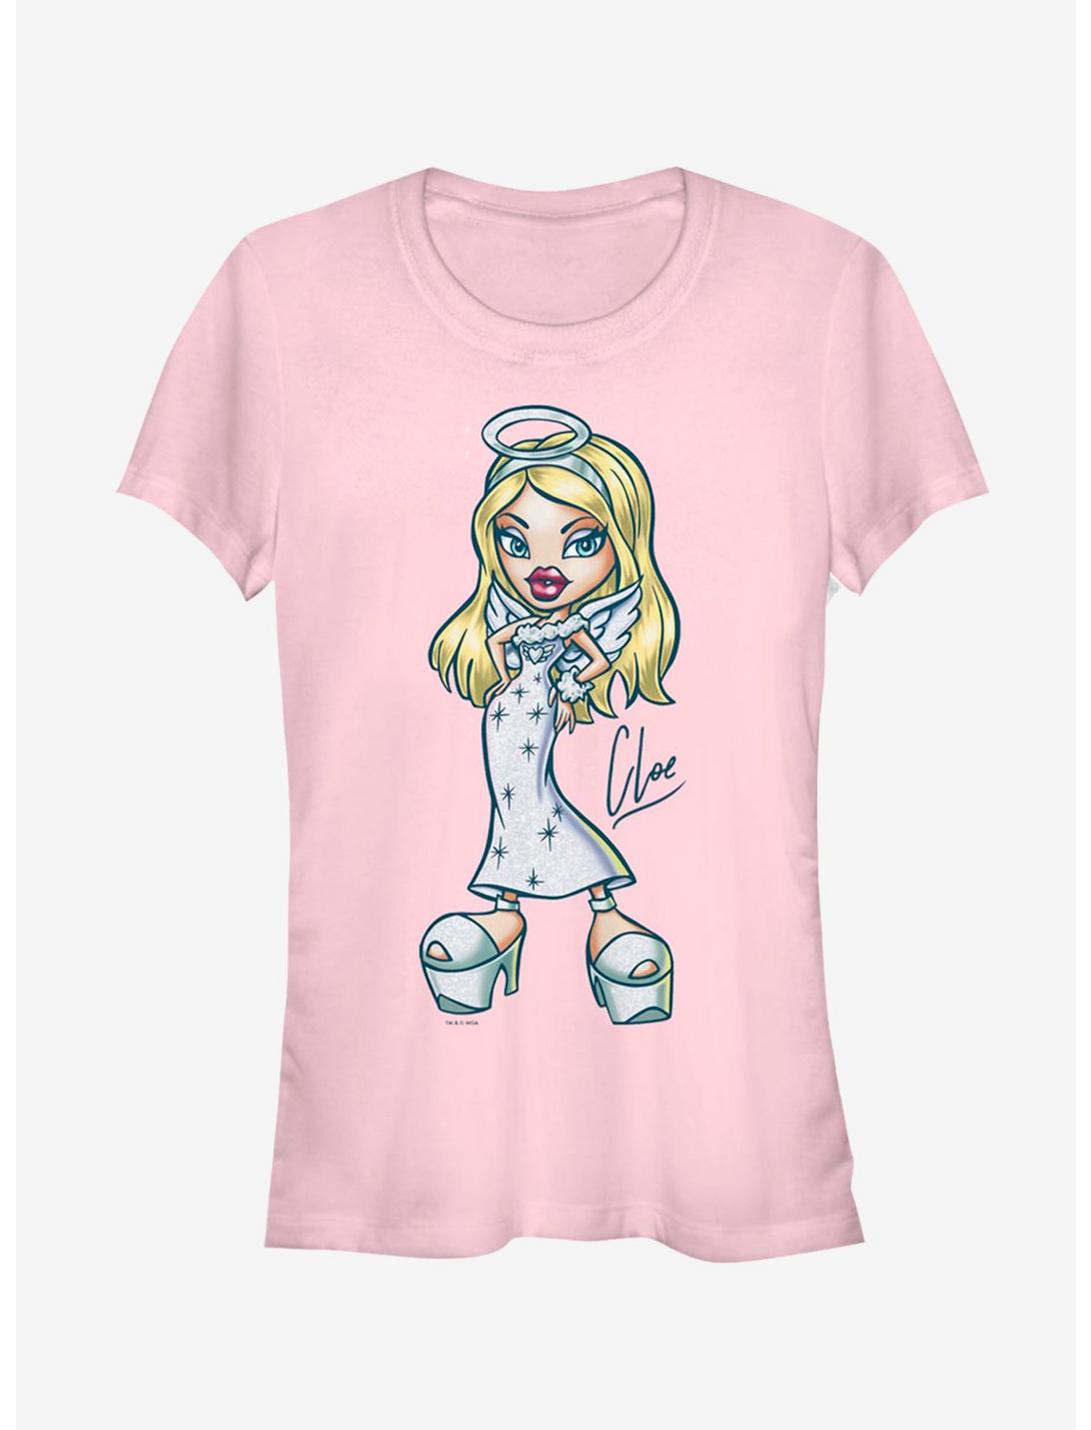 Bratz Angel Cloe Girls T-Shirt, LIGHT PINK, hi-res